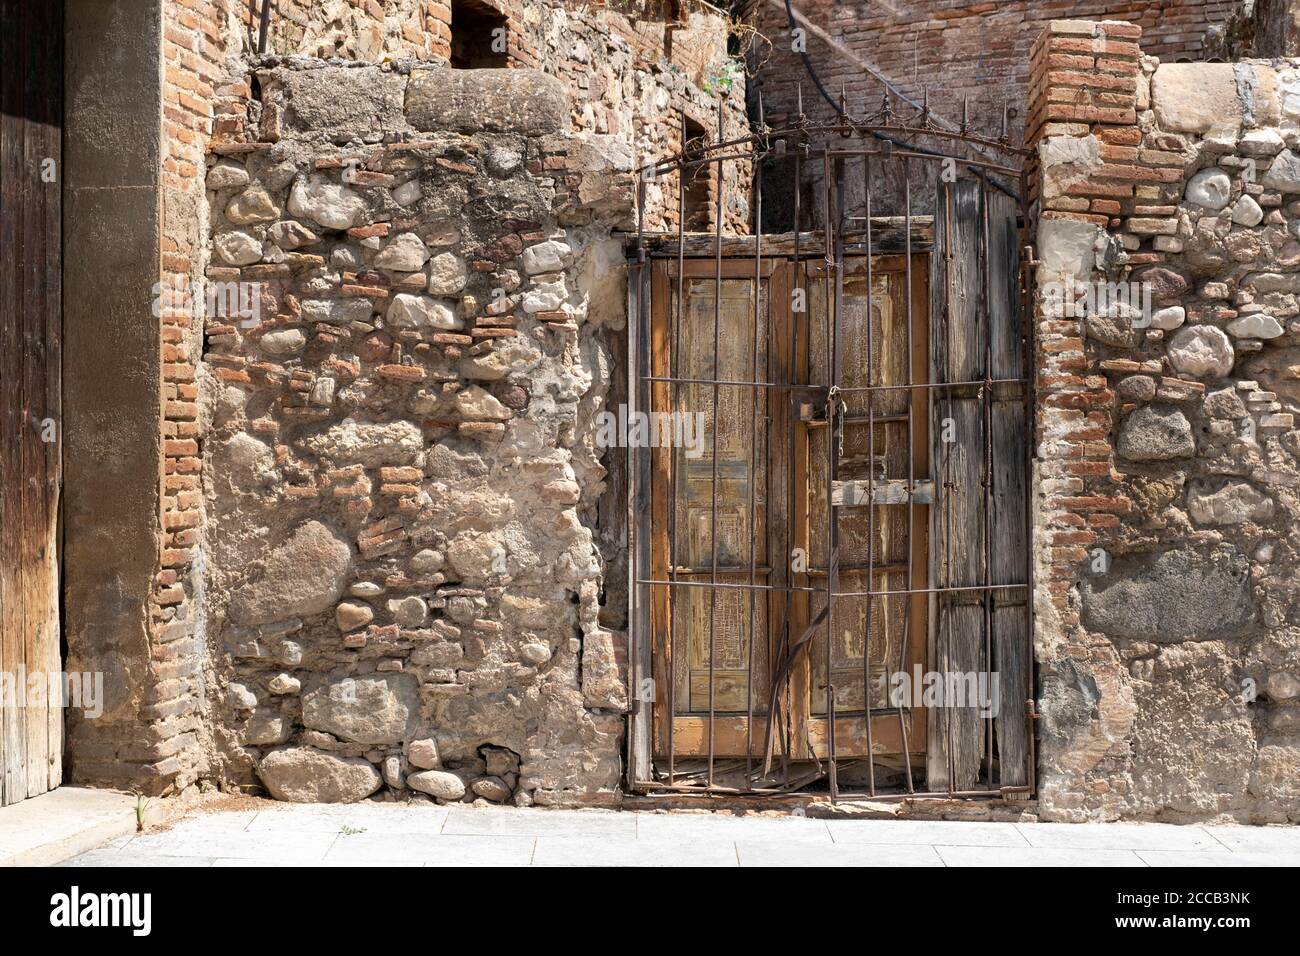 Mur en pierre dans un bâtiment rural et une ancienne porte en bois endommagée. Voyage destination arrière-plan en Espagne, Méditerranée et pays d'Europe du Sud. Banque D'Images